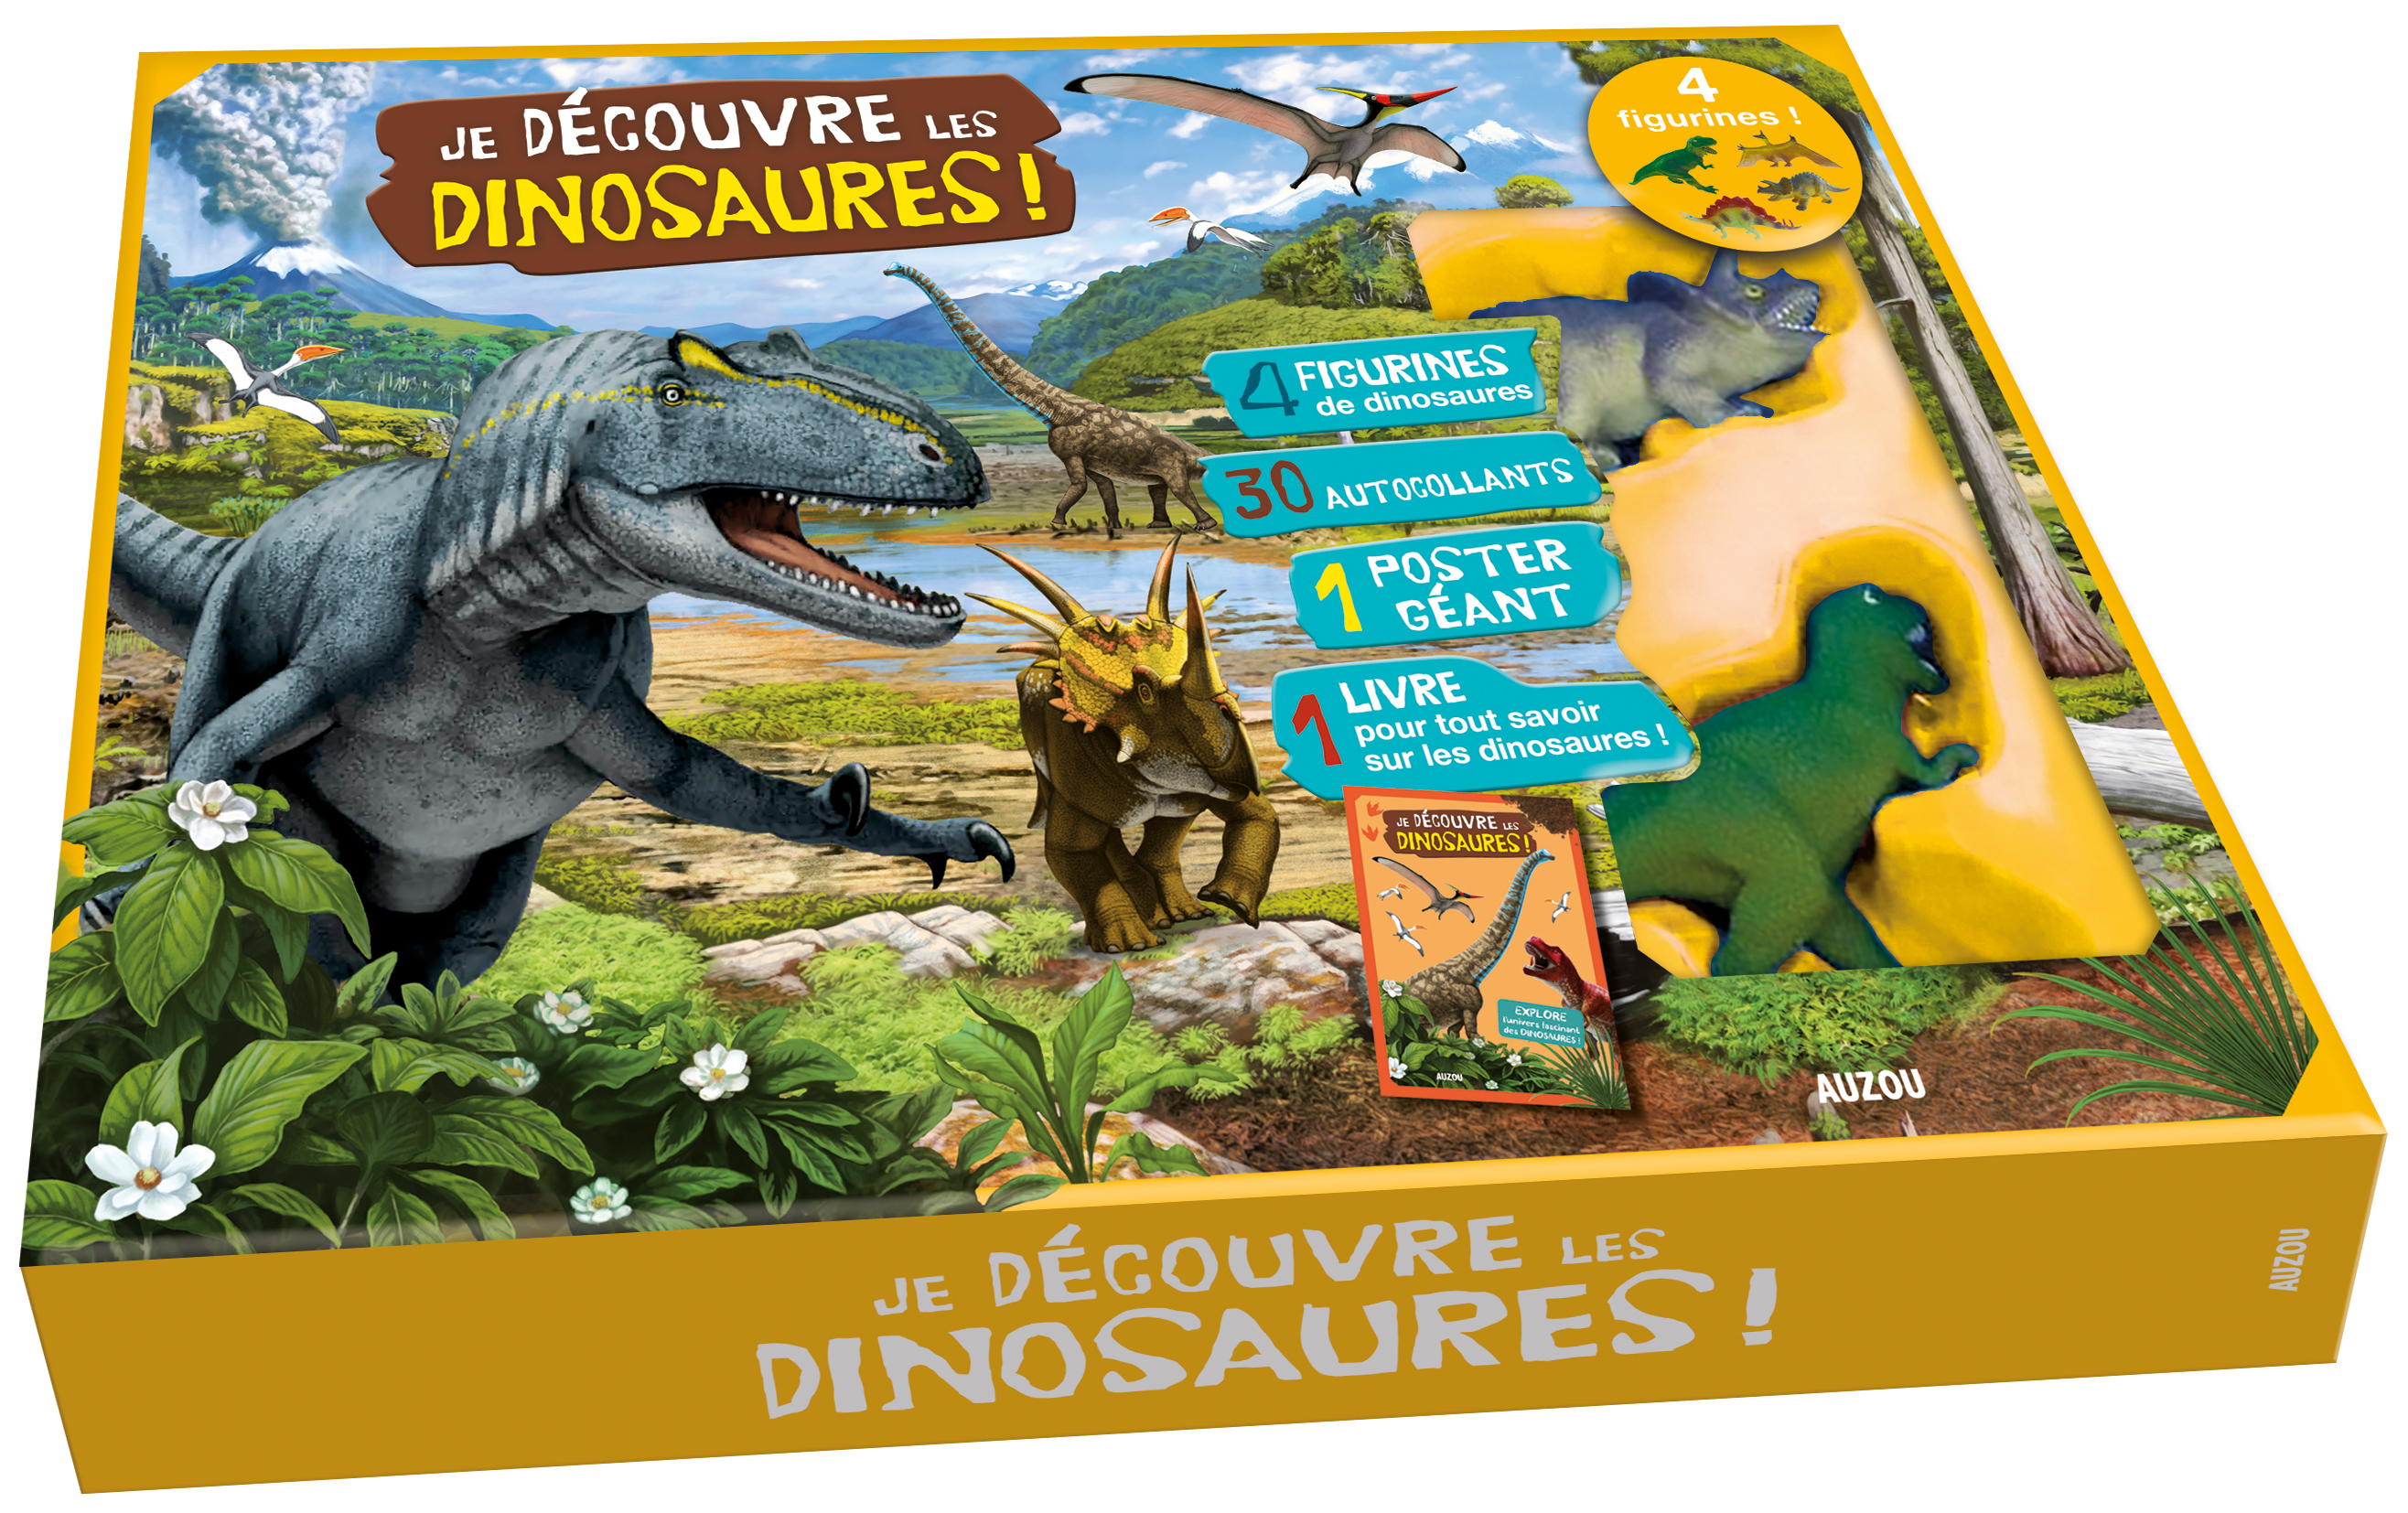 Je découvre les dinosaures - Contient : 4 figurines, 30 autocollants, 1 poster géant, 1 livre